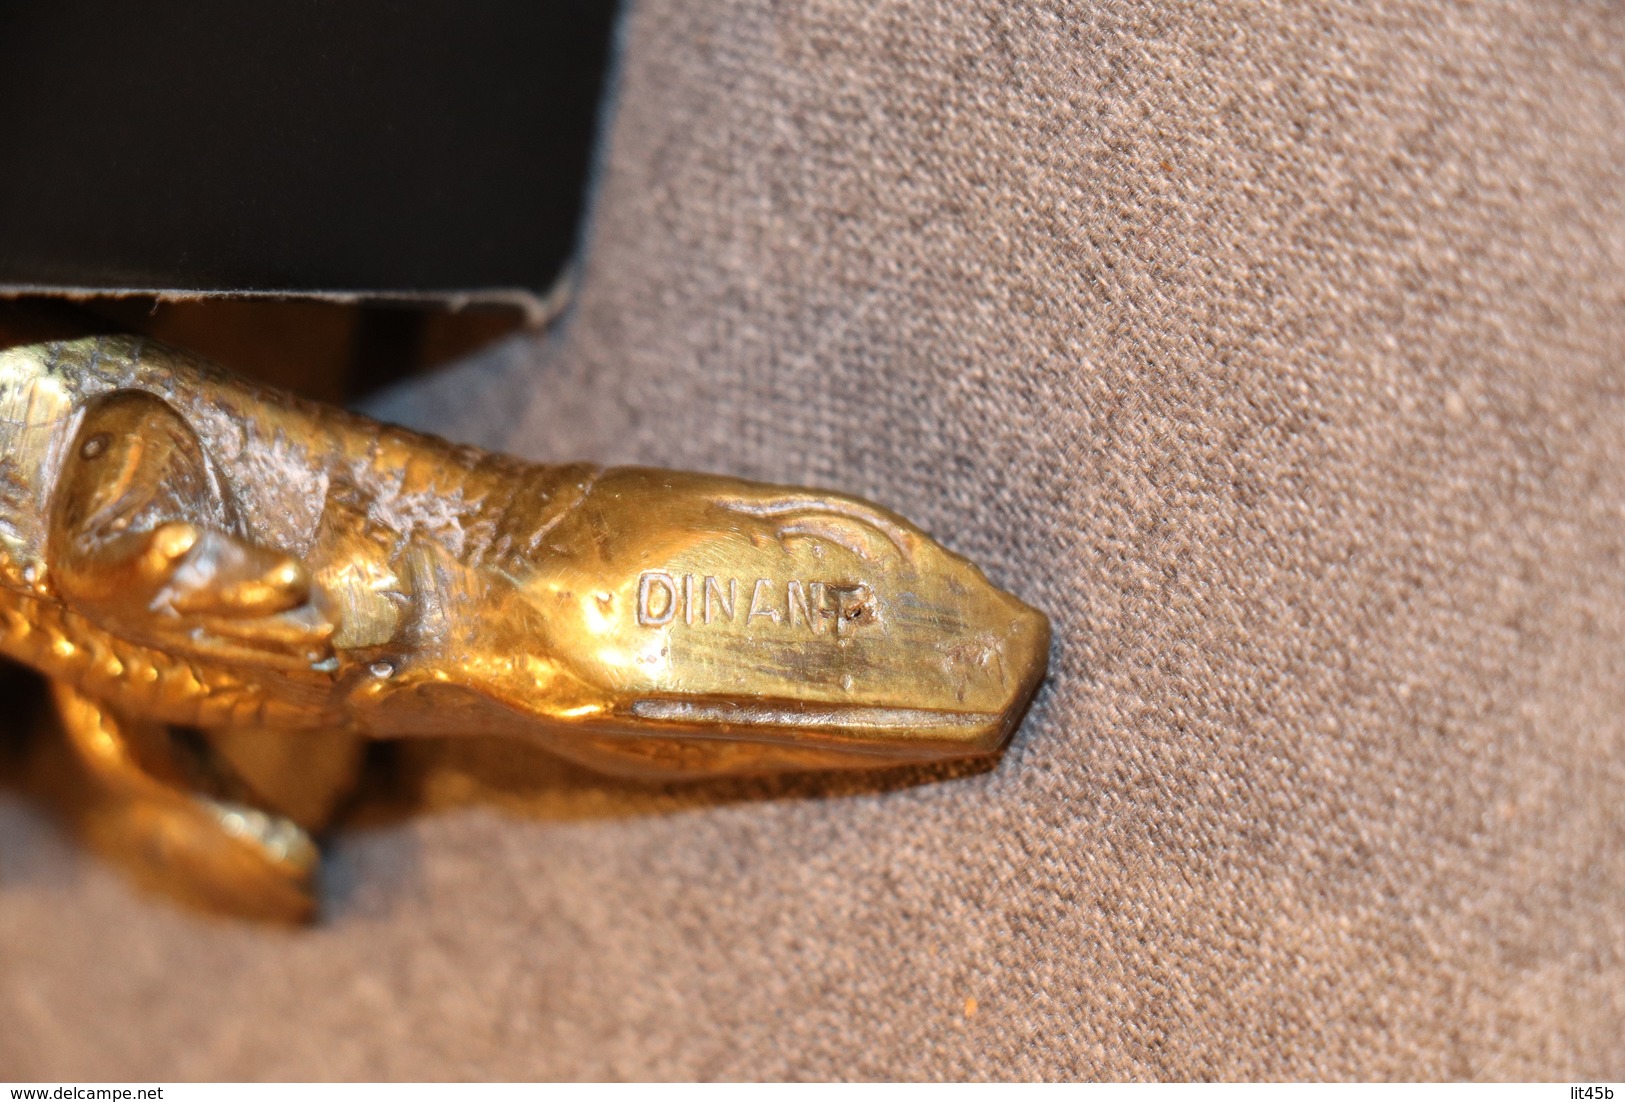 Magnifique Objet Ancien En Bronze,Dinant,Salamandre,longueur.16 Cm. Patine D'origine,bel Objet Ancien - Bronces